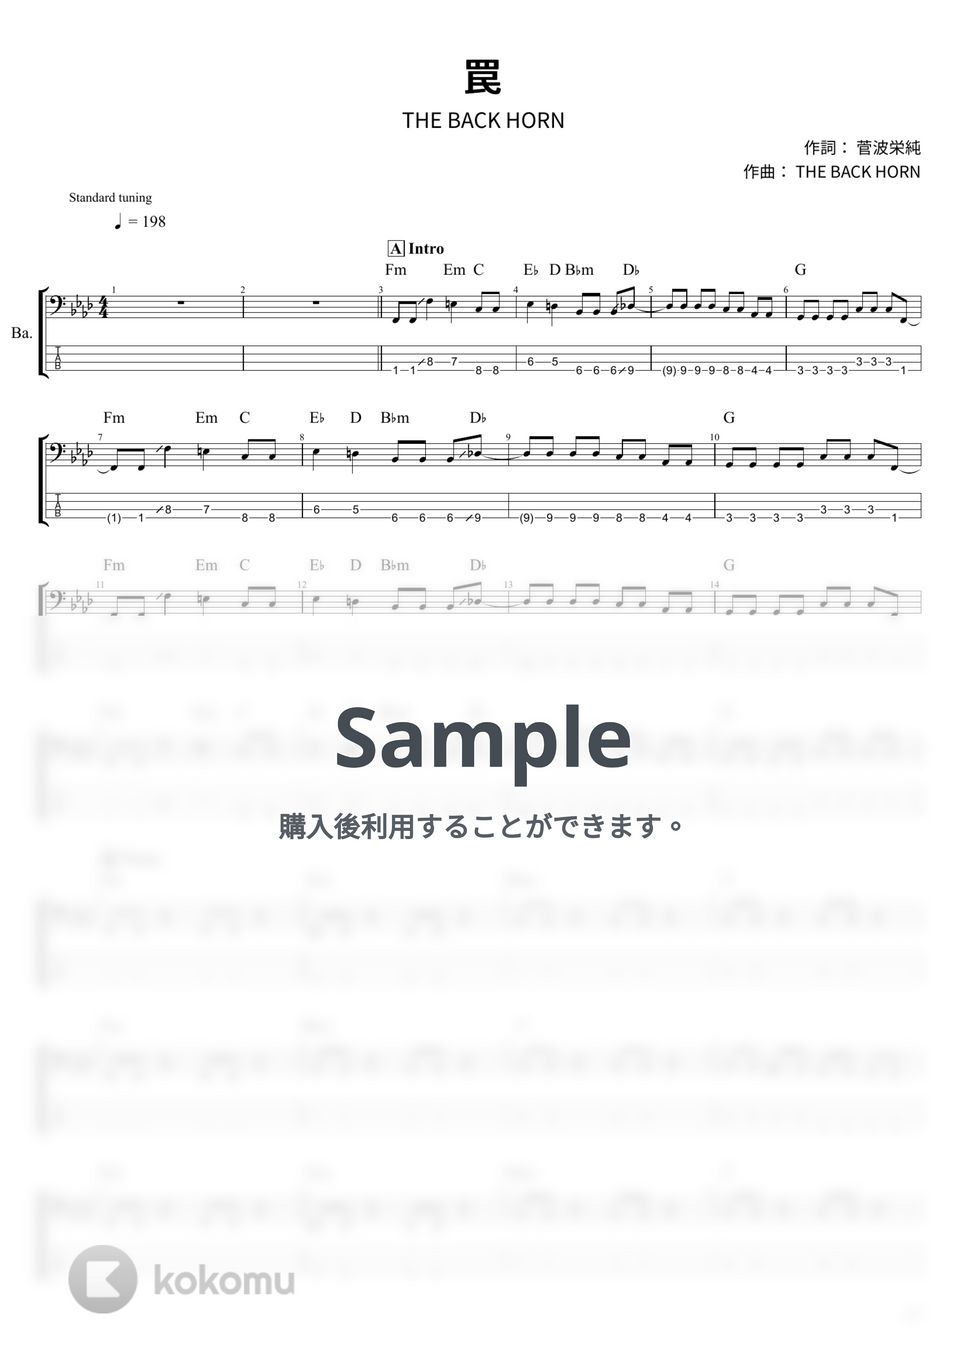 THE BACK HORN - 罠 (ベース Tab譜 4弦) by T's bass score